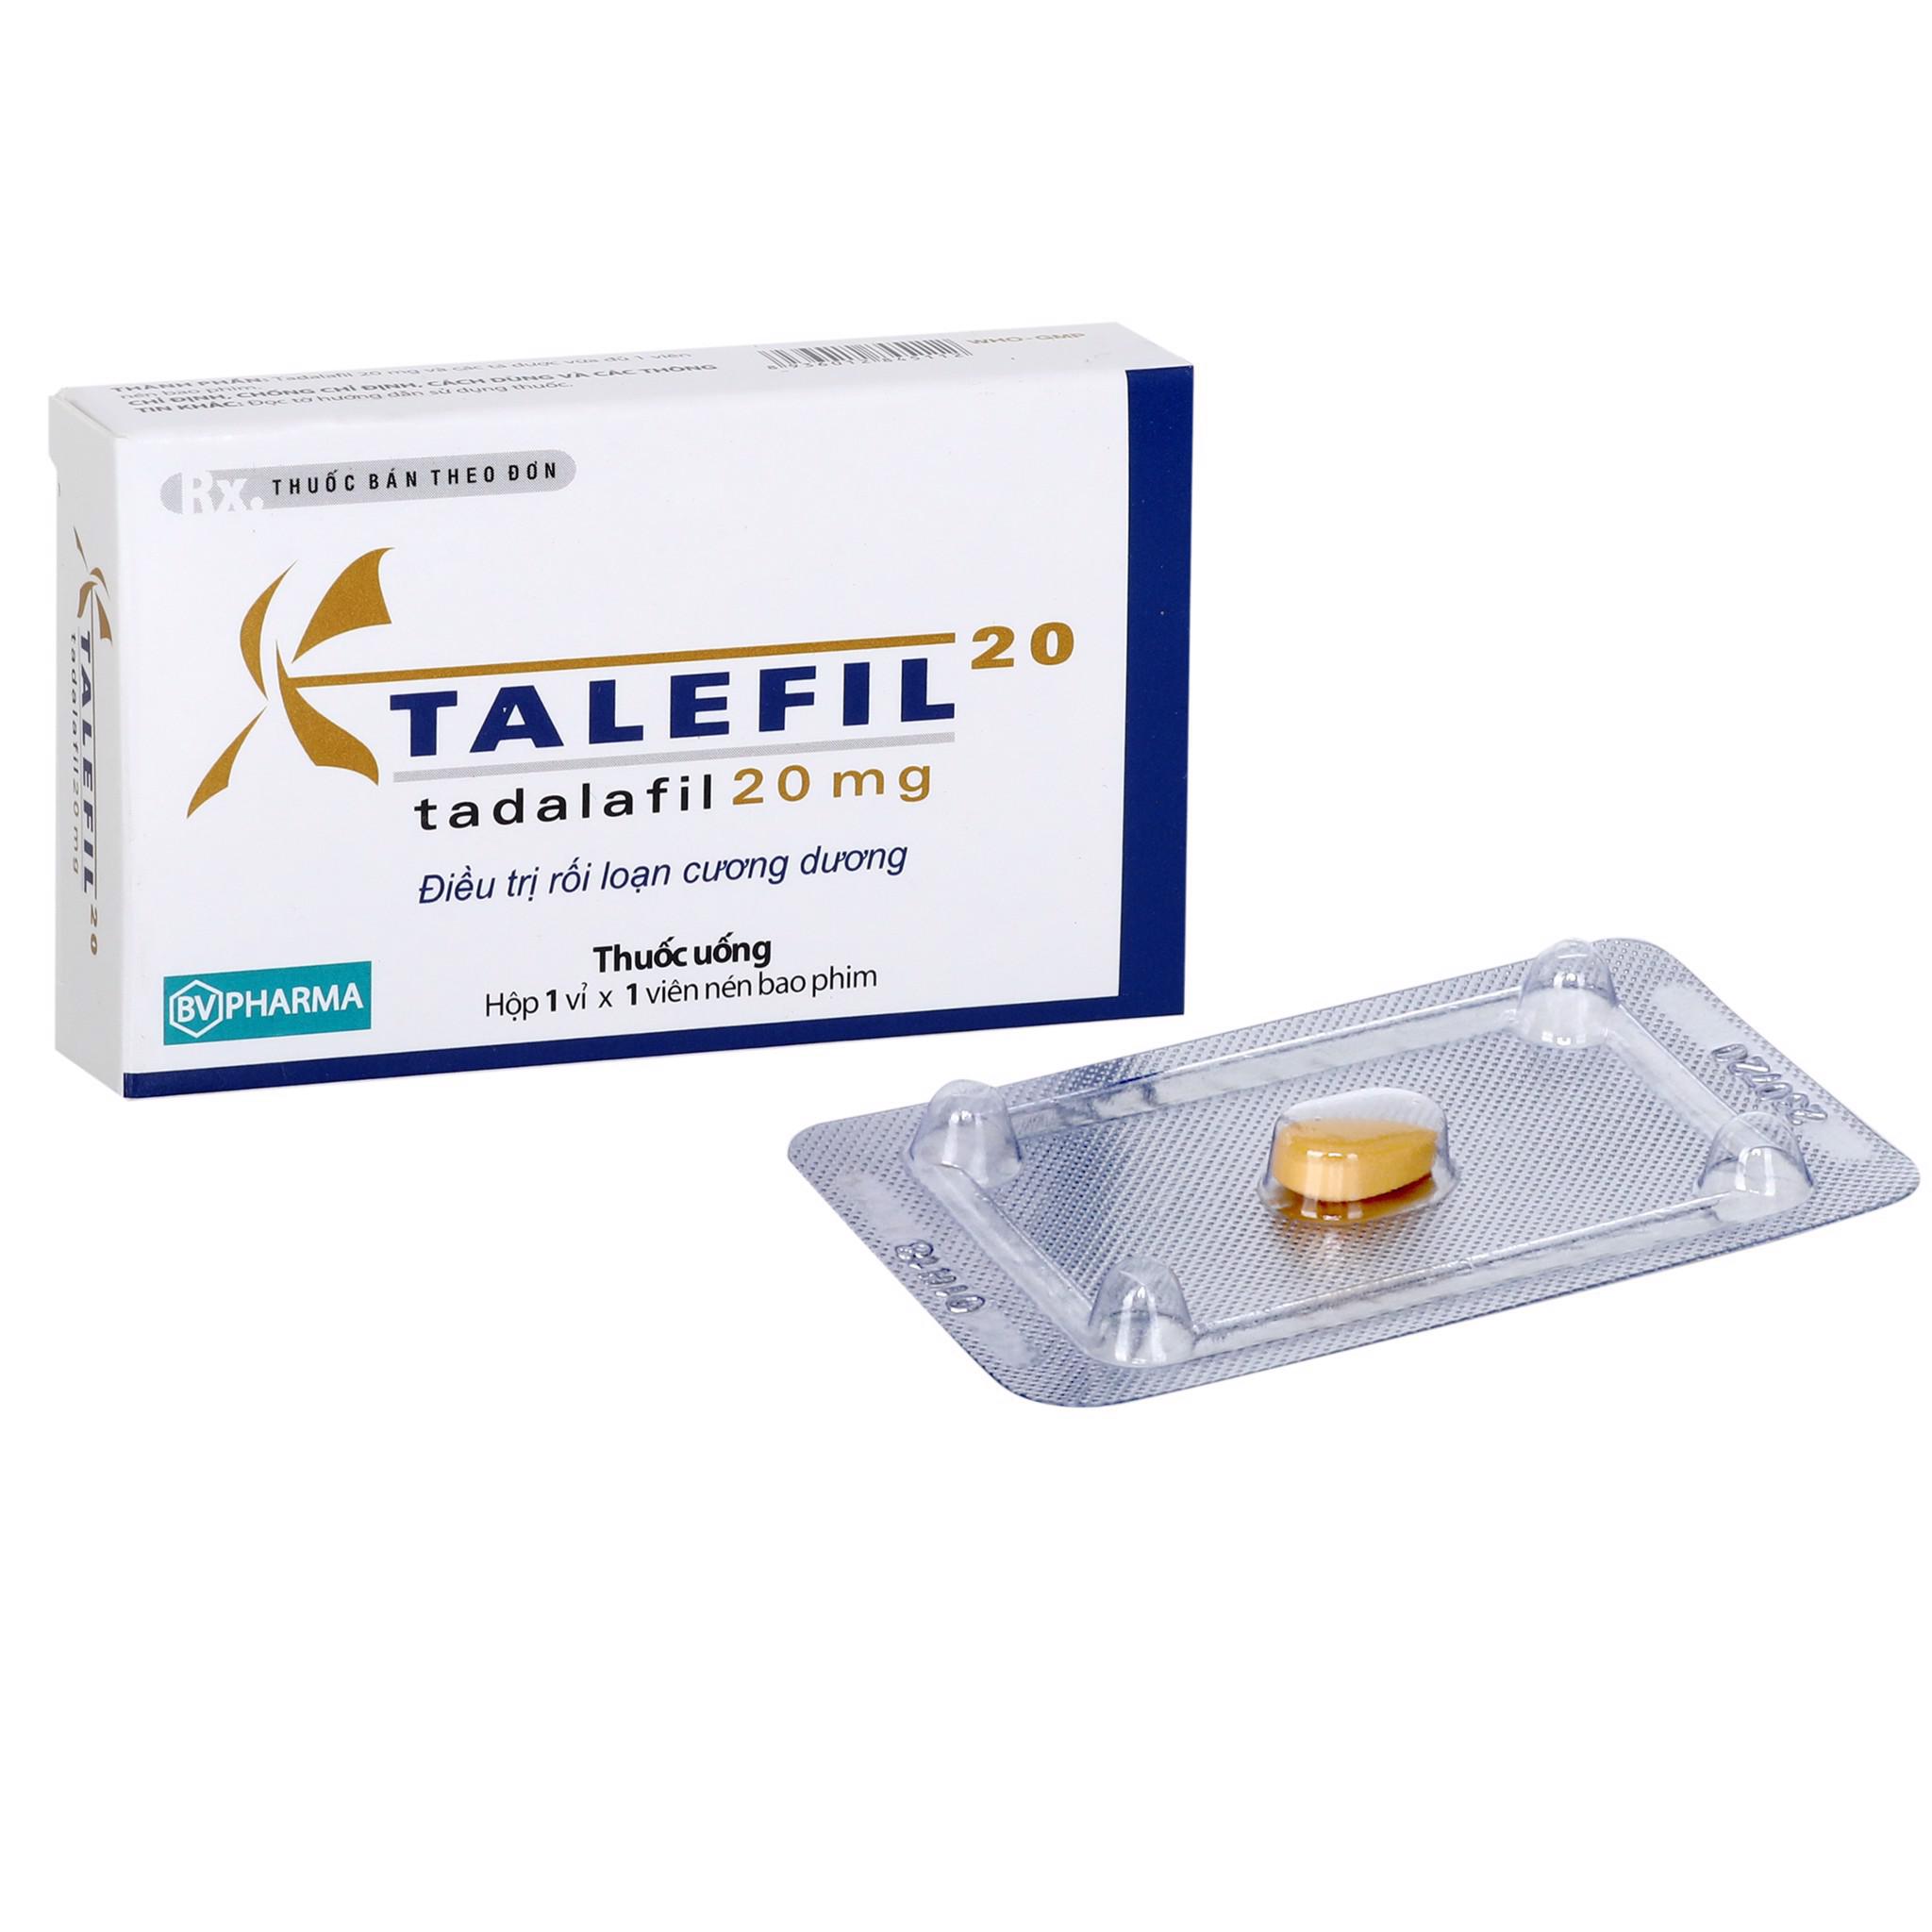 Talefil 20 (Tadalafil) BV Pharma (H/1v)